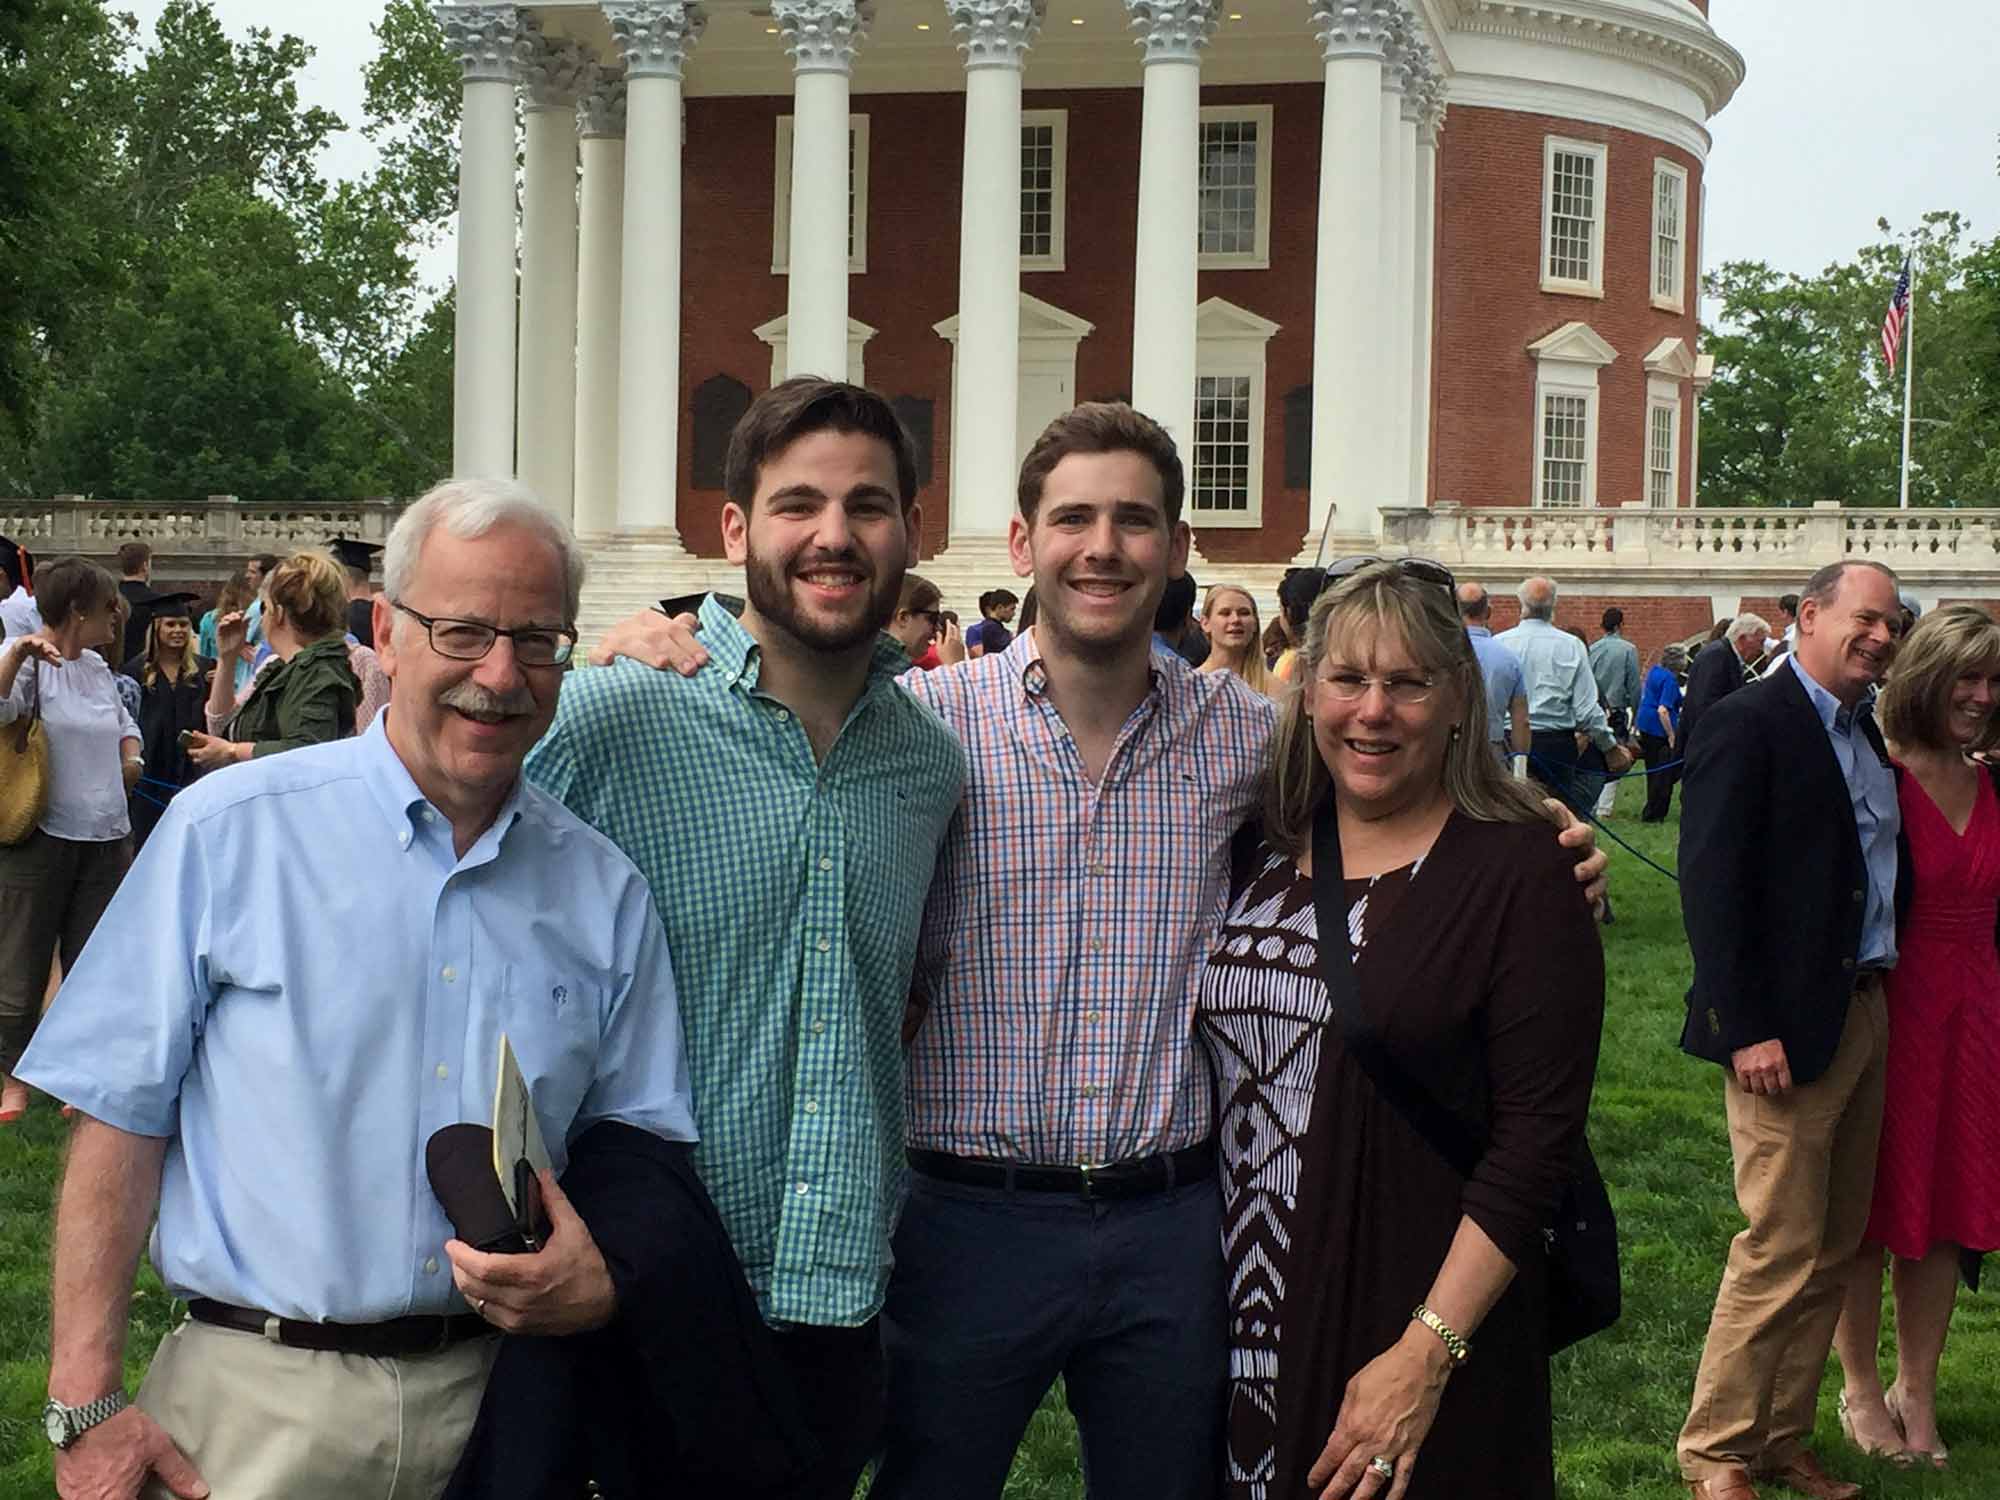 Max and family at graduation 